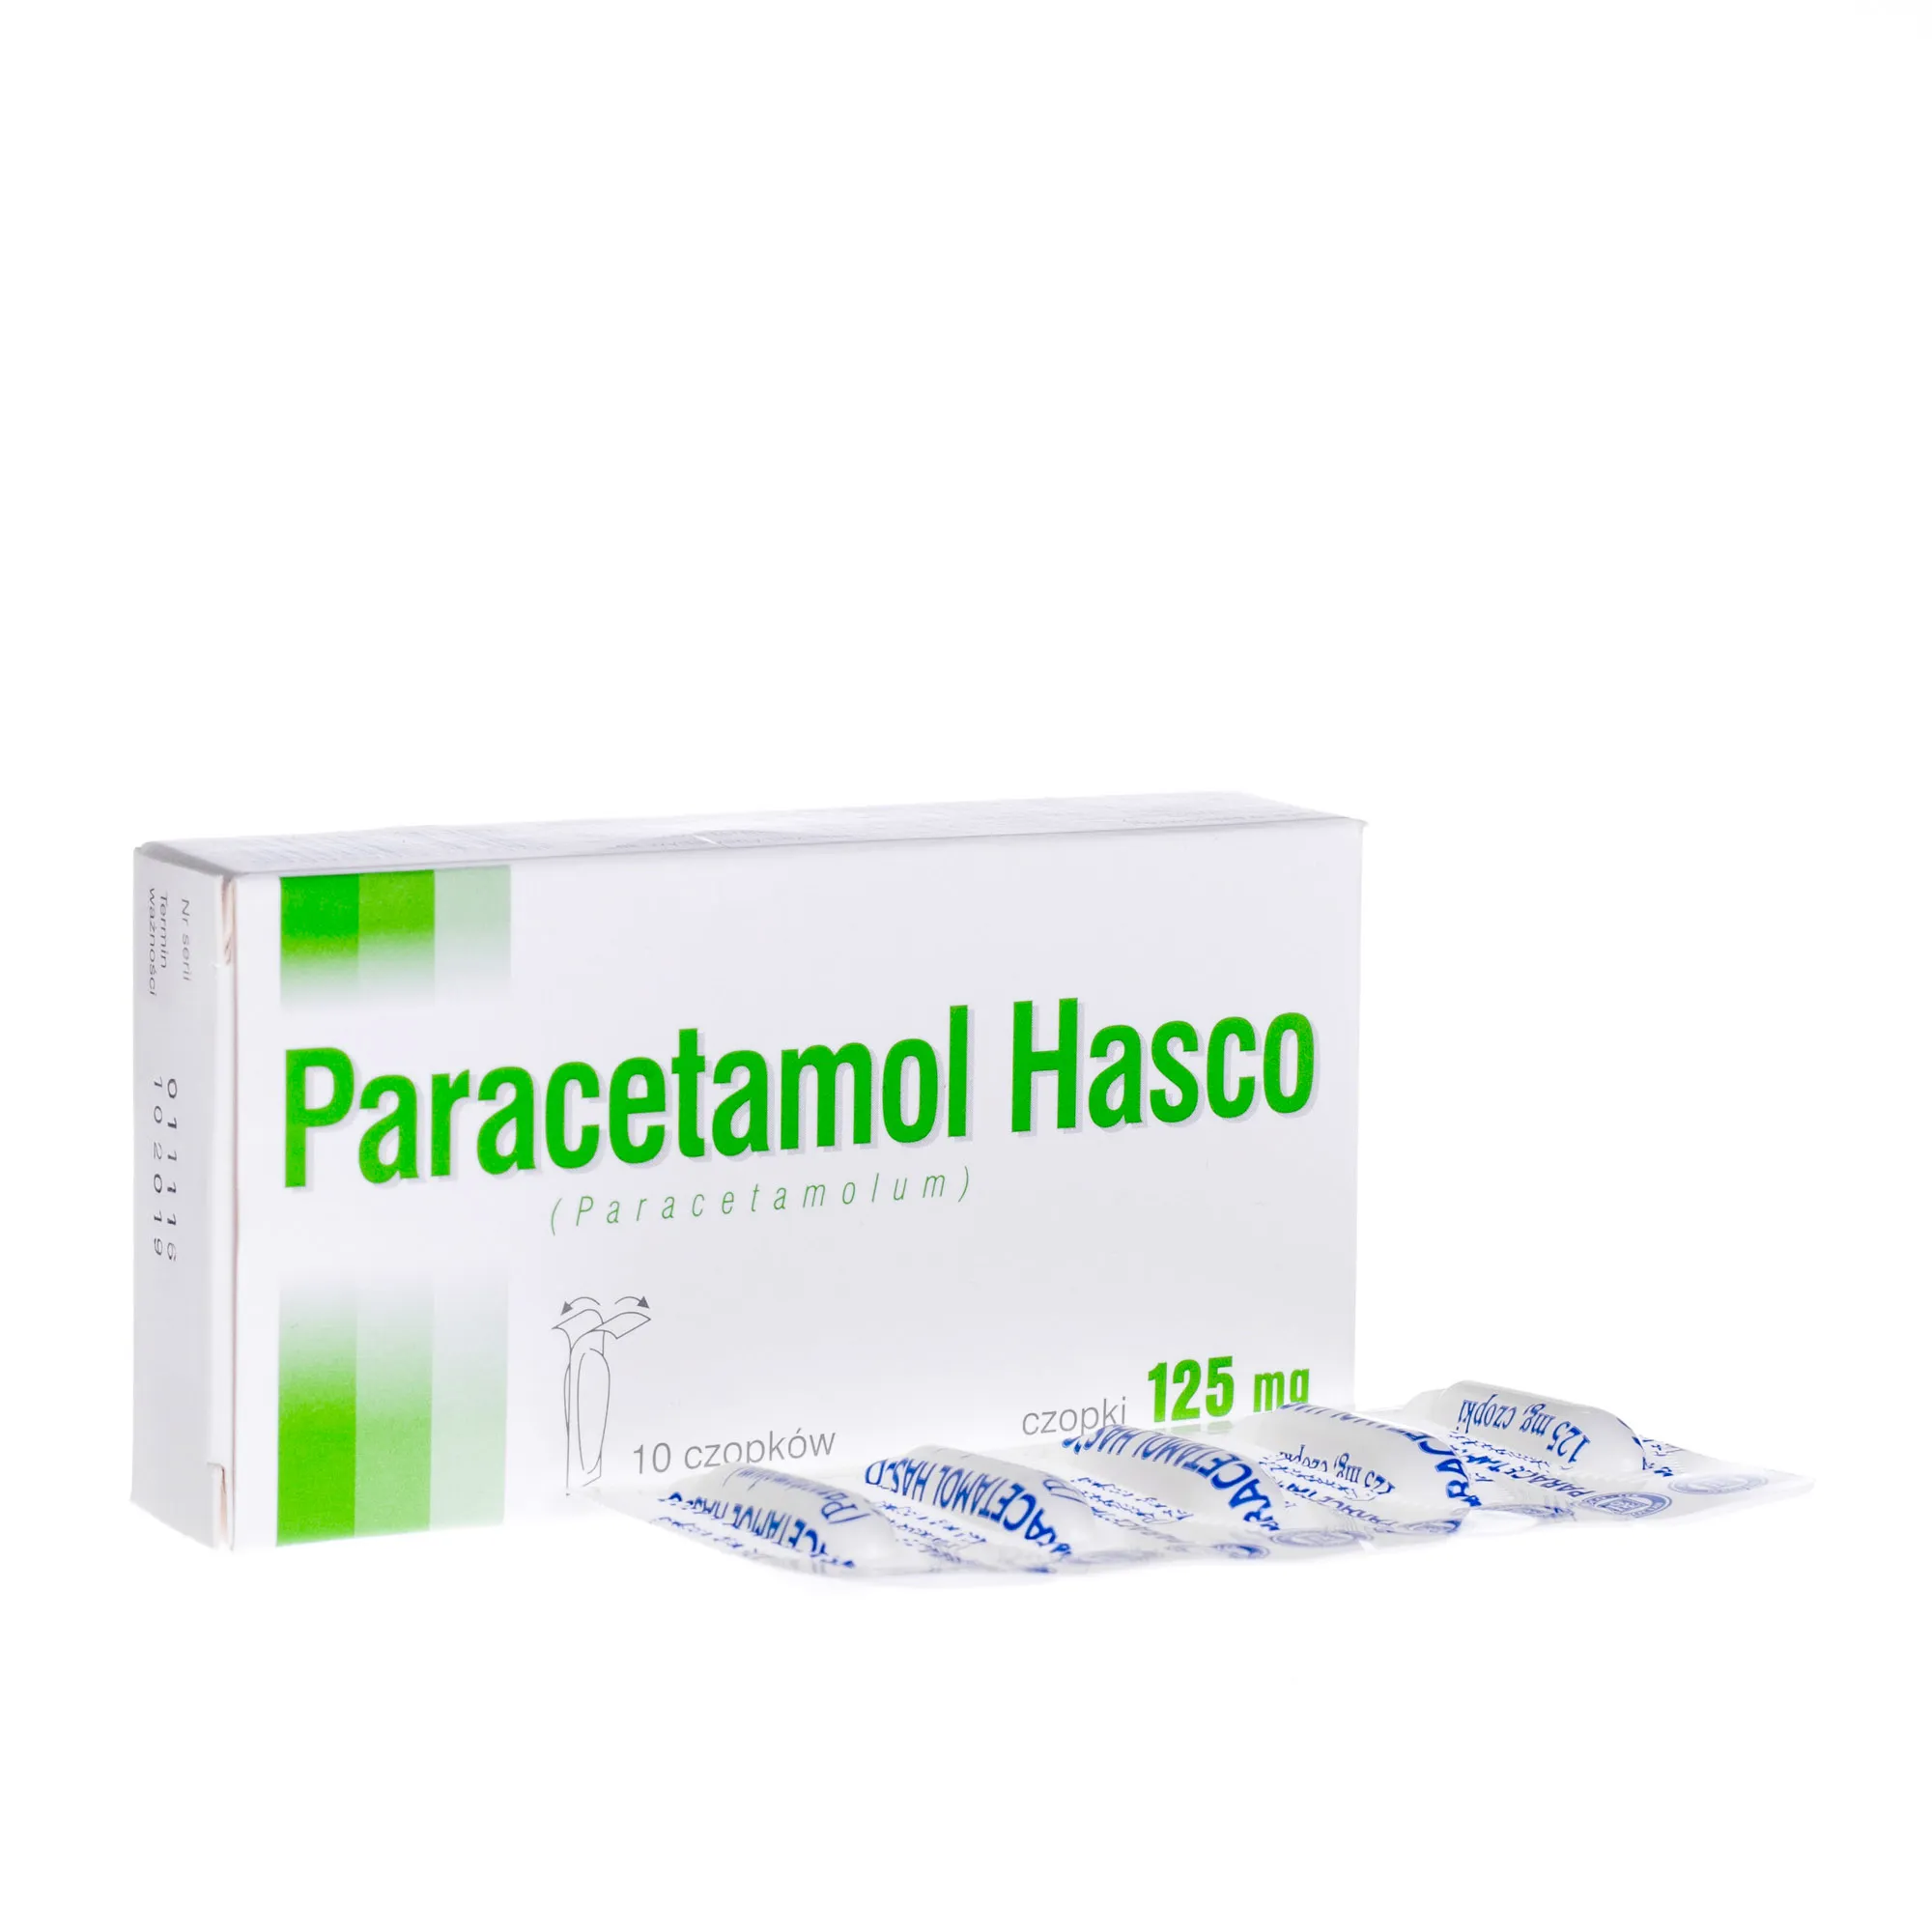 Paracetamol Hasco, 10 czopków, 125 mg 